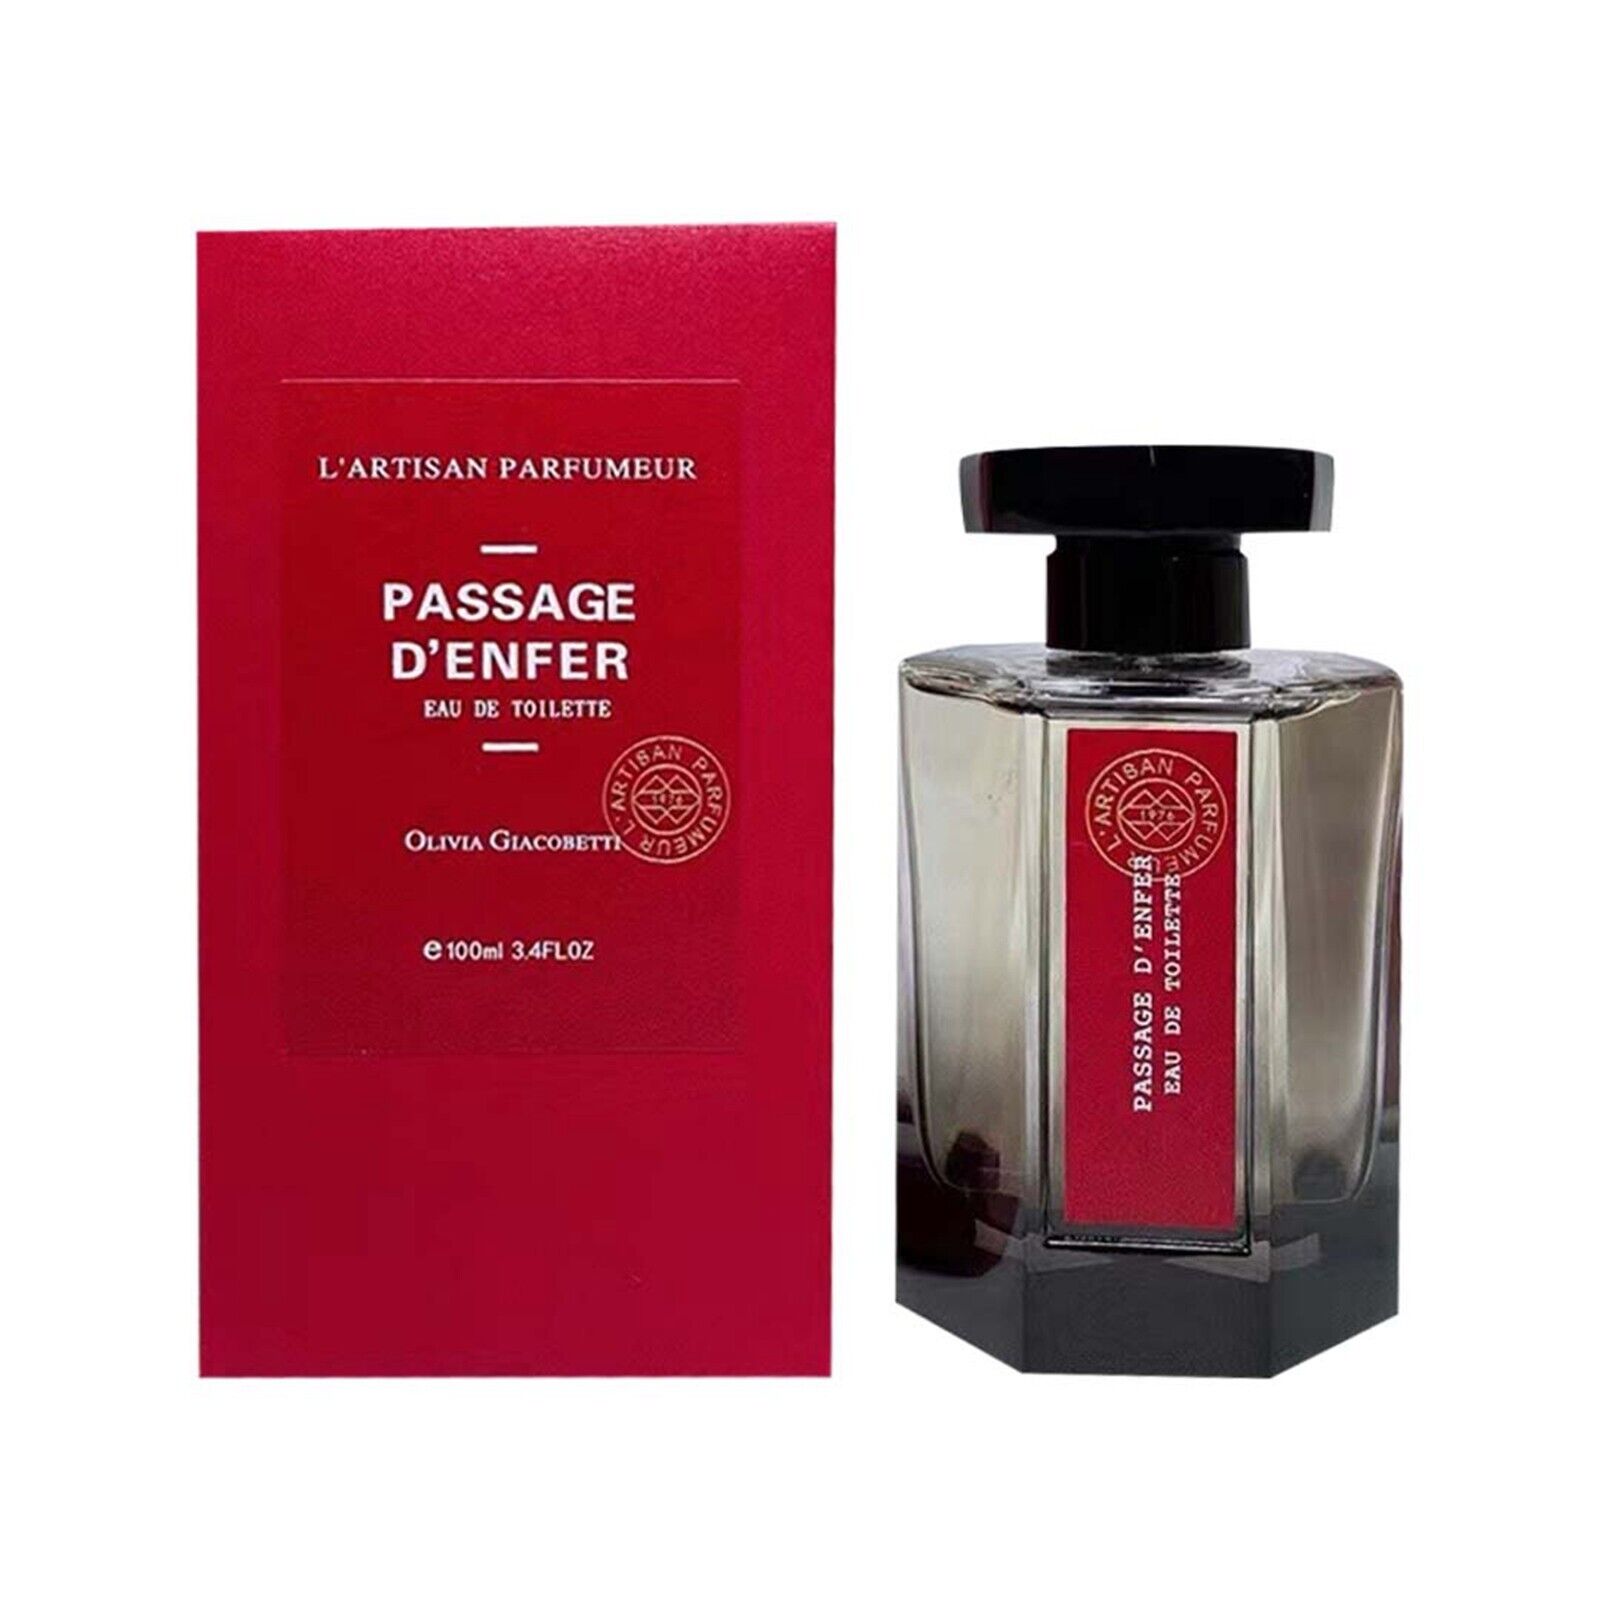 L'Artisan Parfumeur Passage D'Enfer Eau de Toilette 100 ml / 3.4 oz Unisex